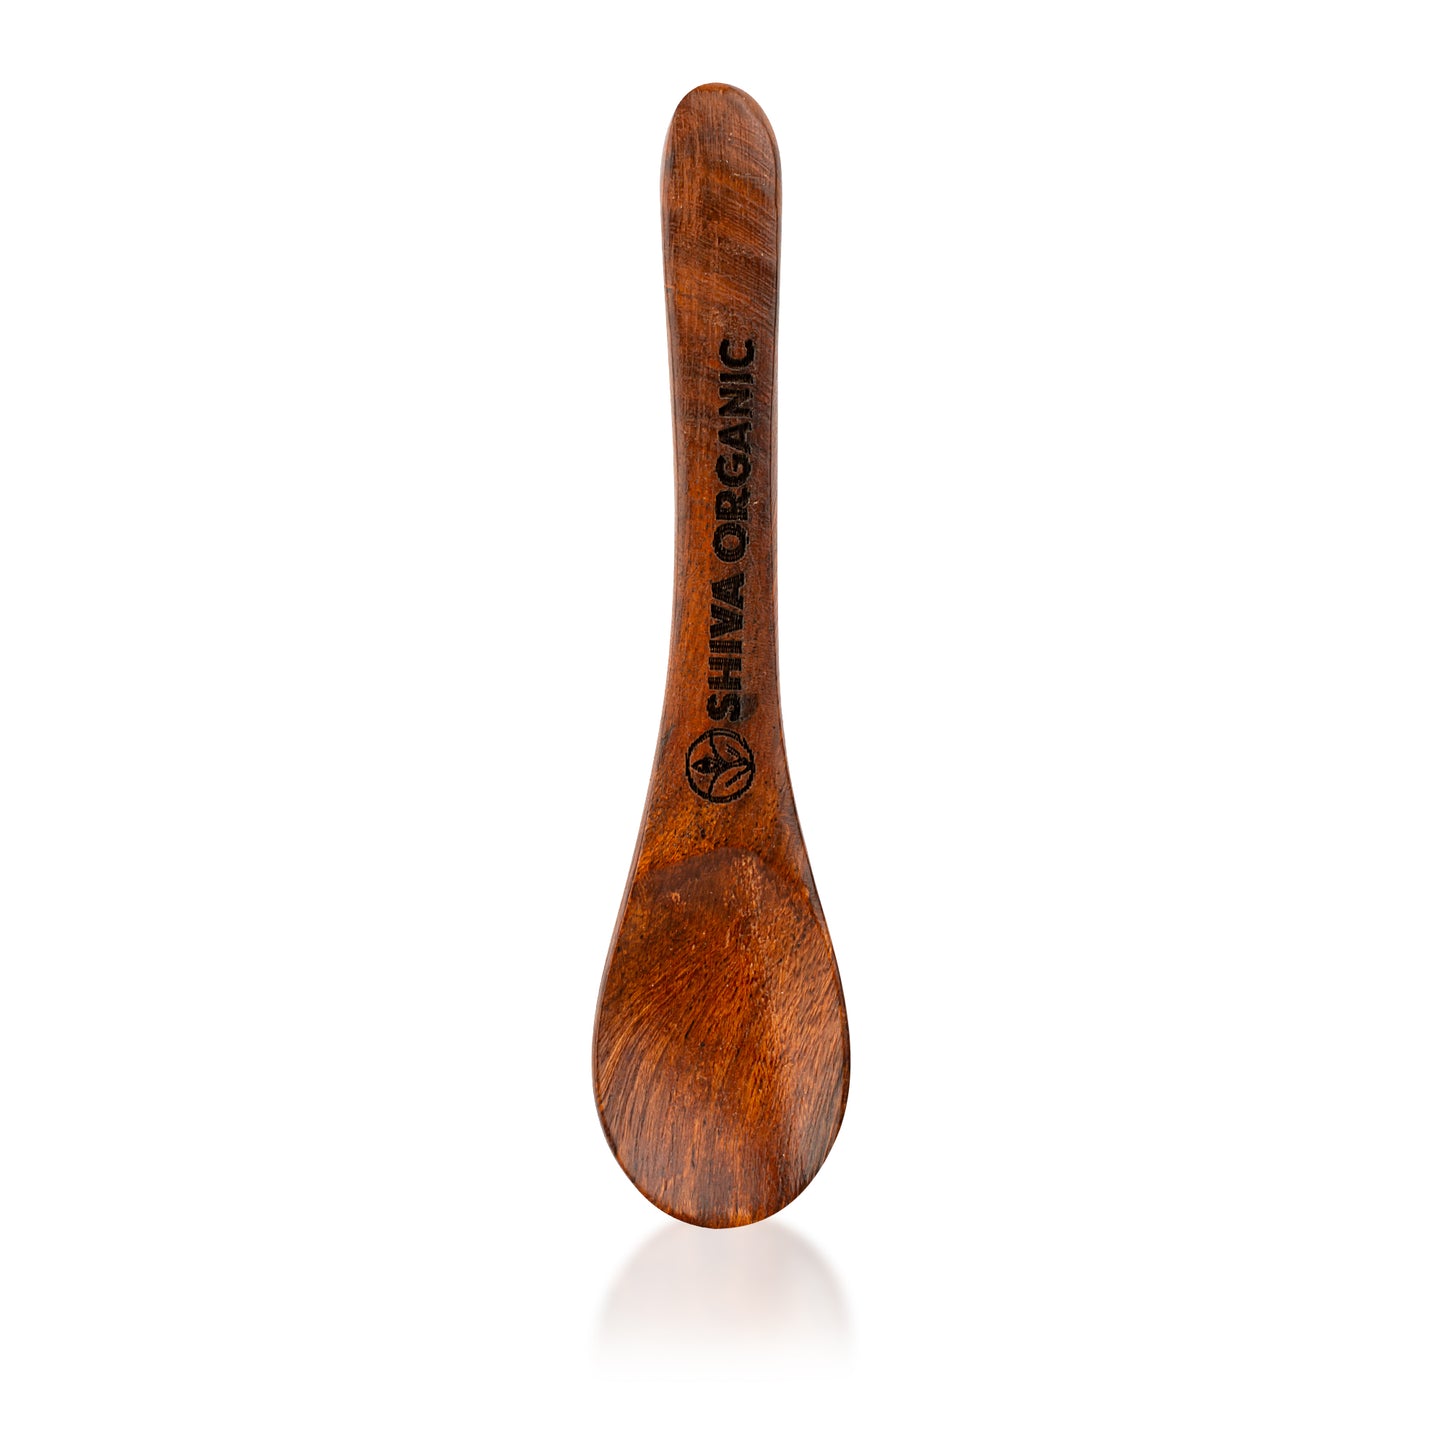 Handmade Sppon - Sheesham wood